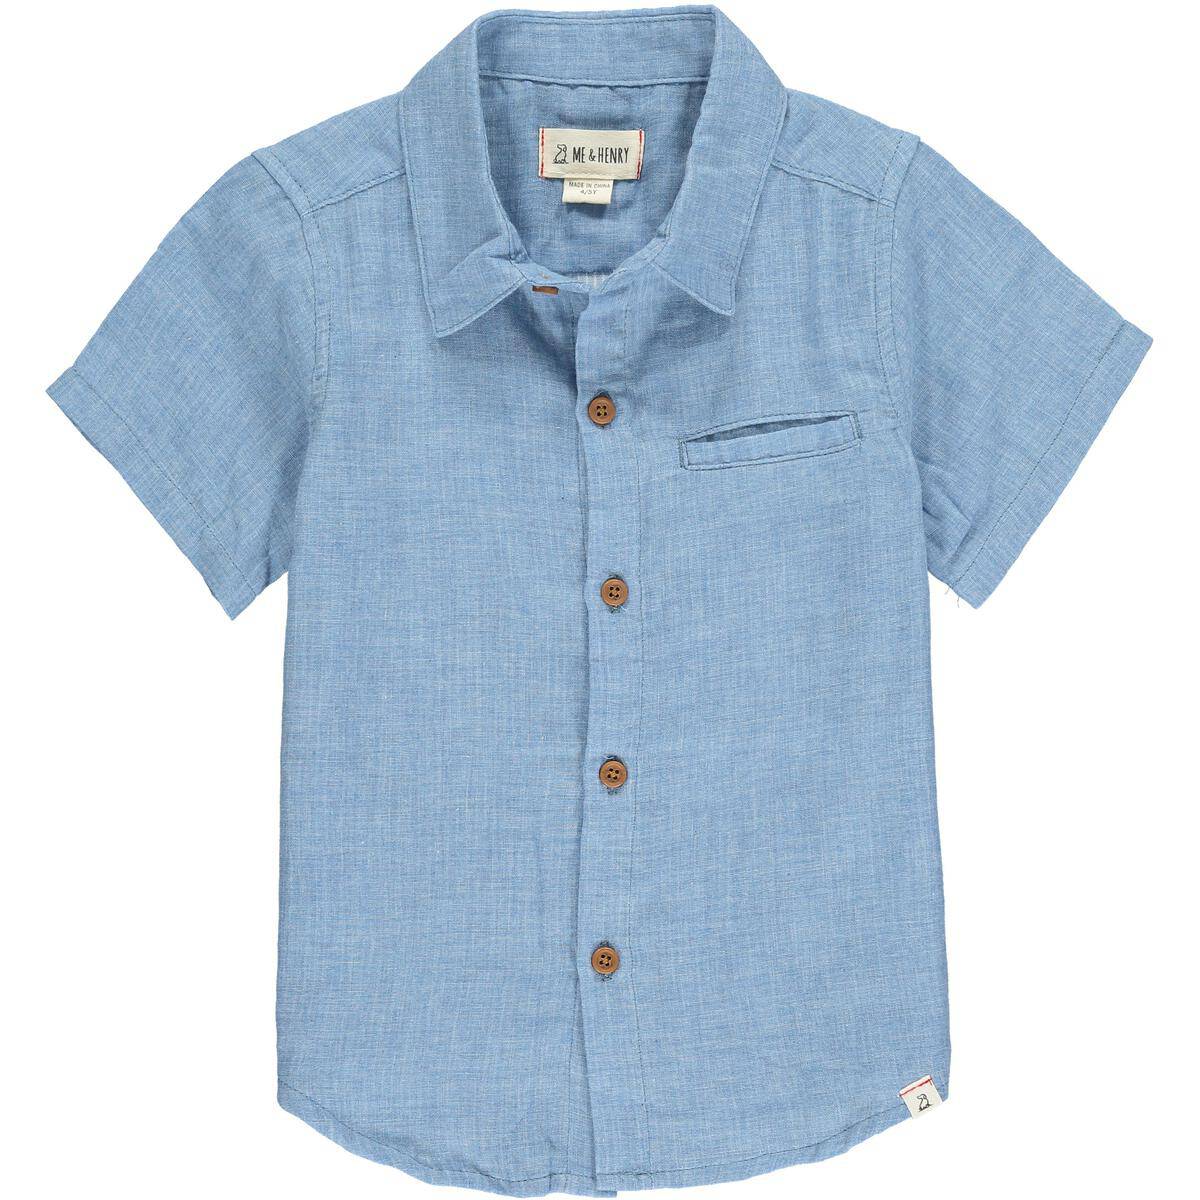 Pale Blue Newport Short Sleeved Shirt - Twinkle Twinkle Little One